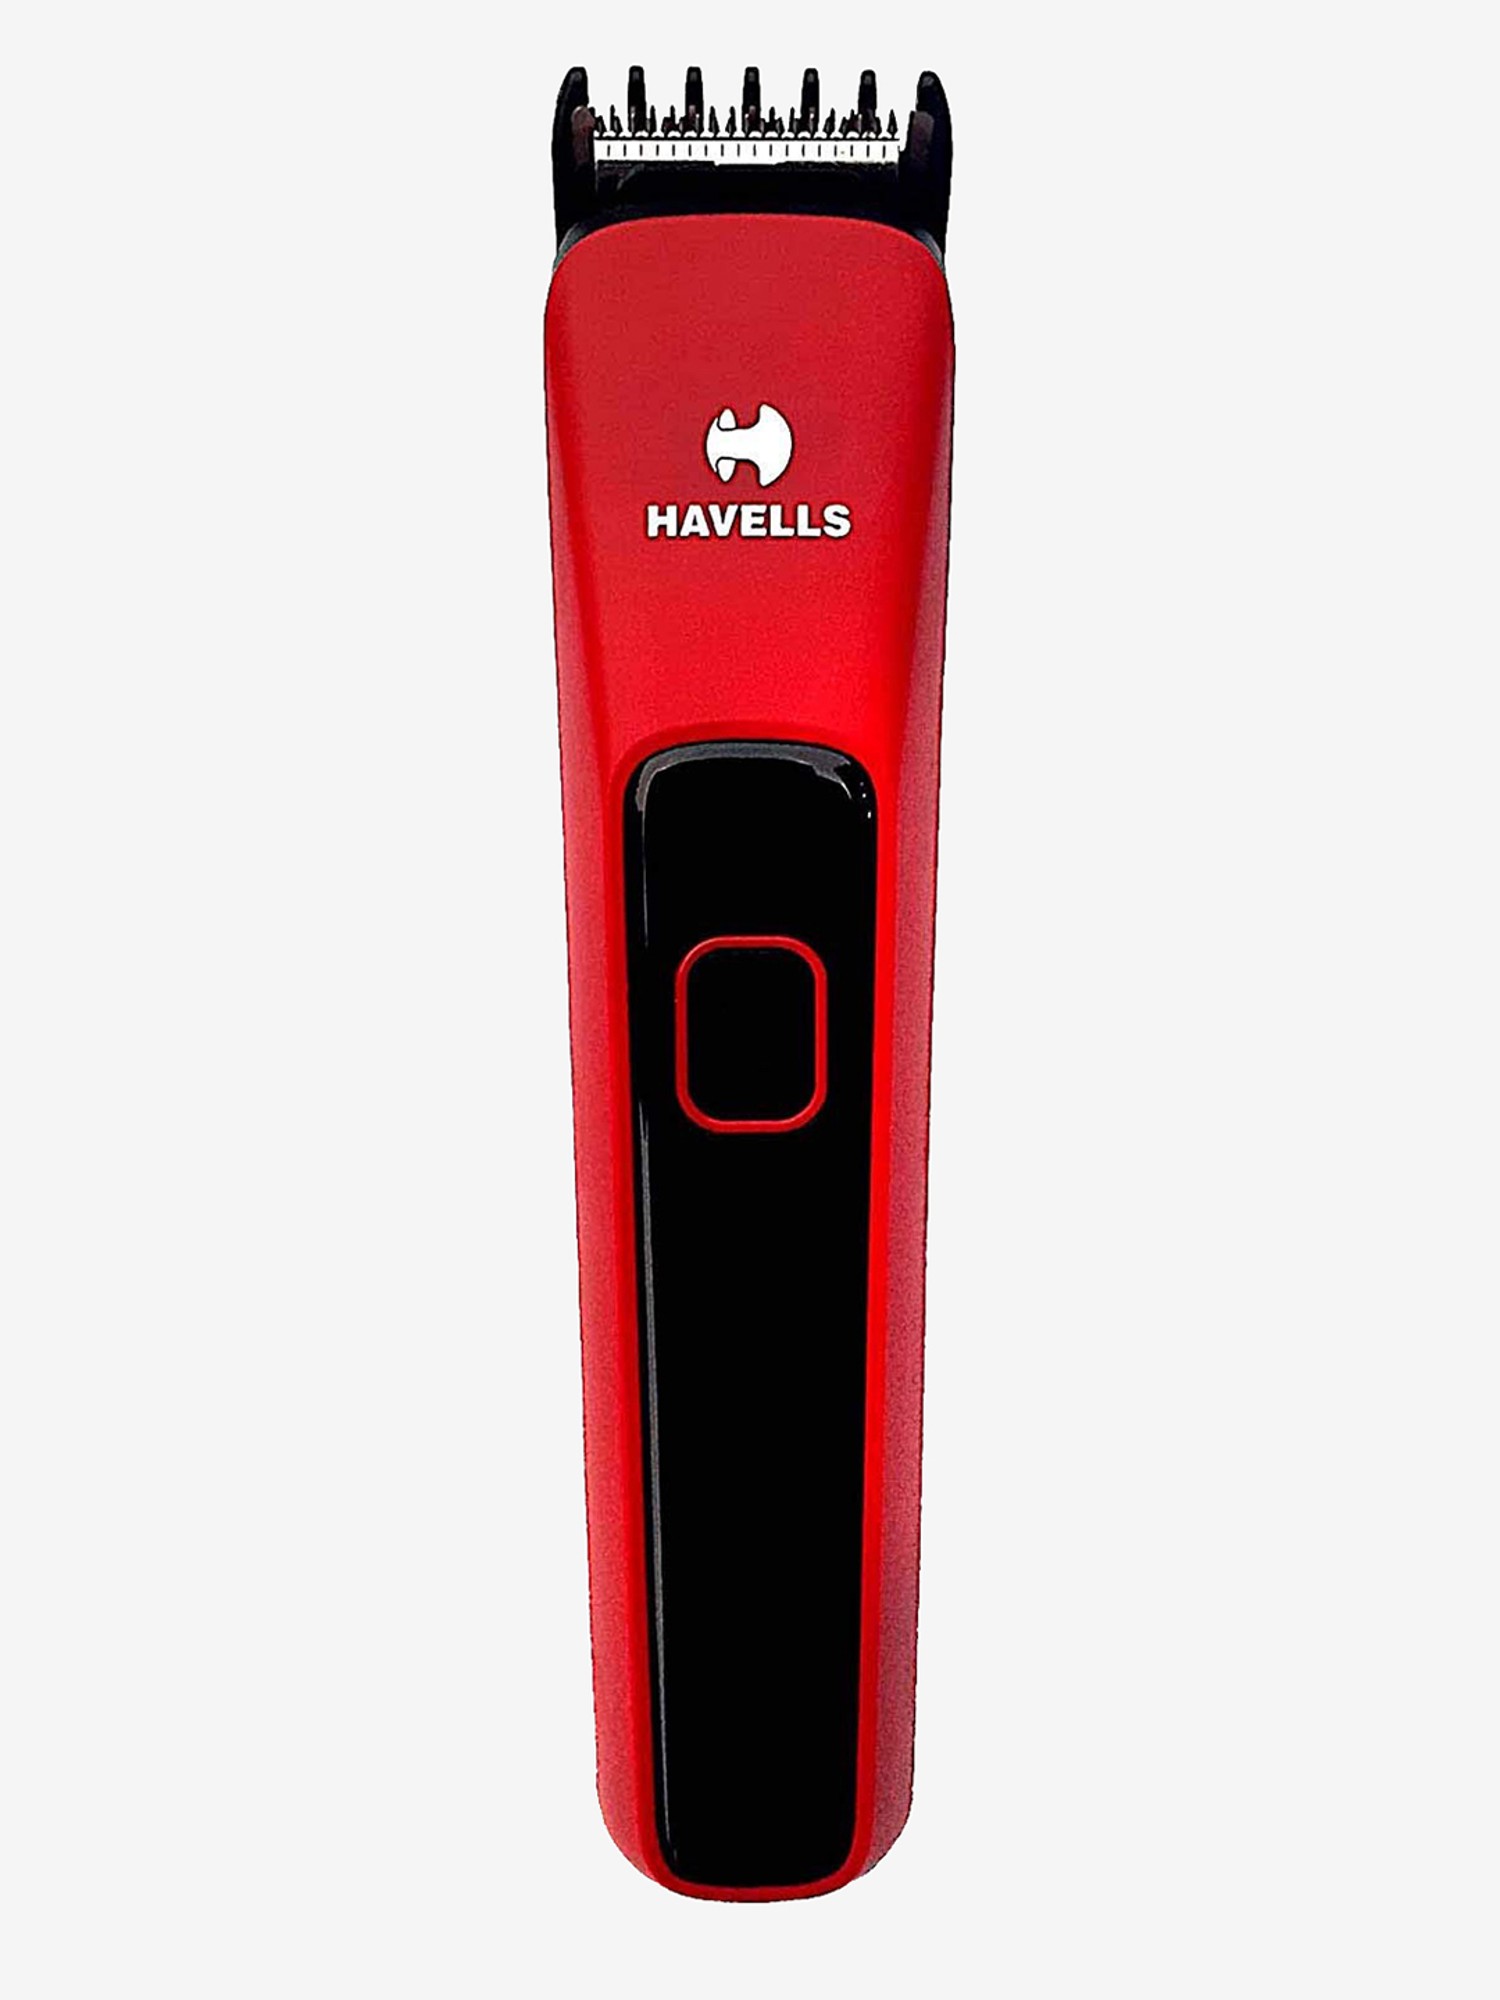 trimmer for men havells